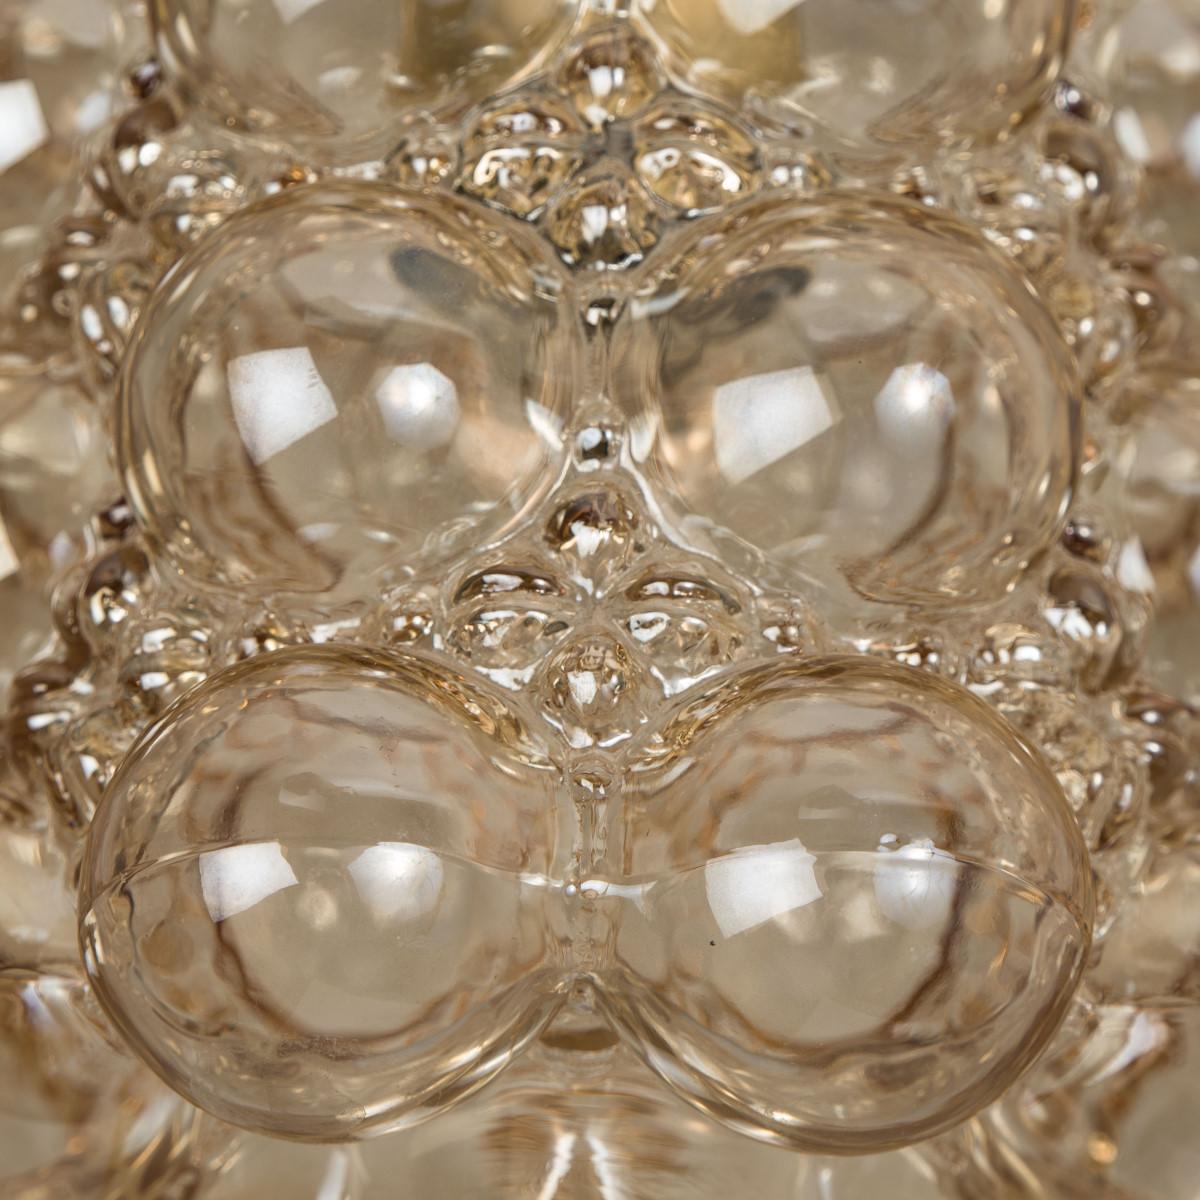 1 des 8 magnifiques lustres ou suspensions en verre bullé conçus par Helena Tynell pour Glashütte Limburg. Un classique du design, le verre soufflé à la main donne une merveilleuse lueur chaude.

Les dimensions : Hauteur 80 cm à partir du plafond,